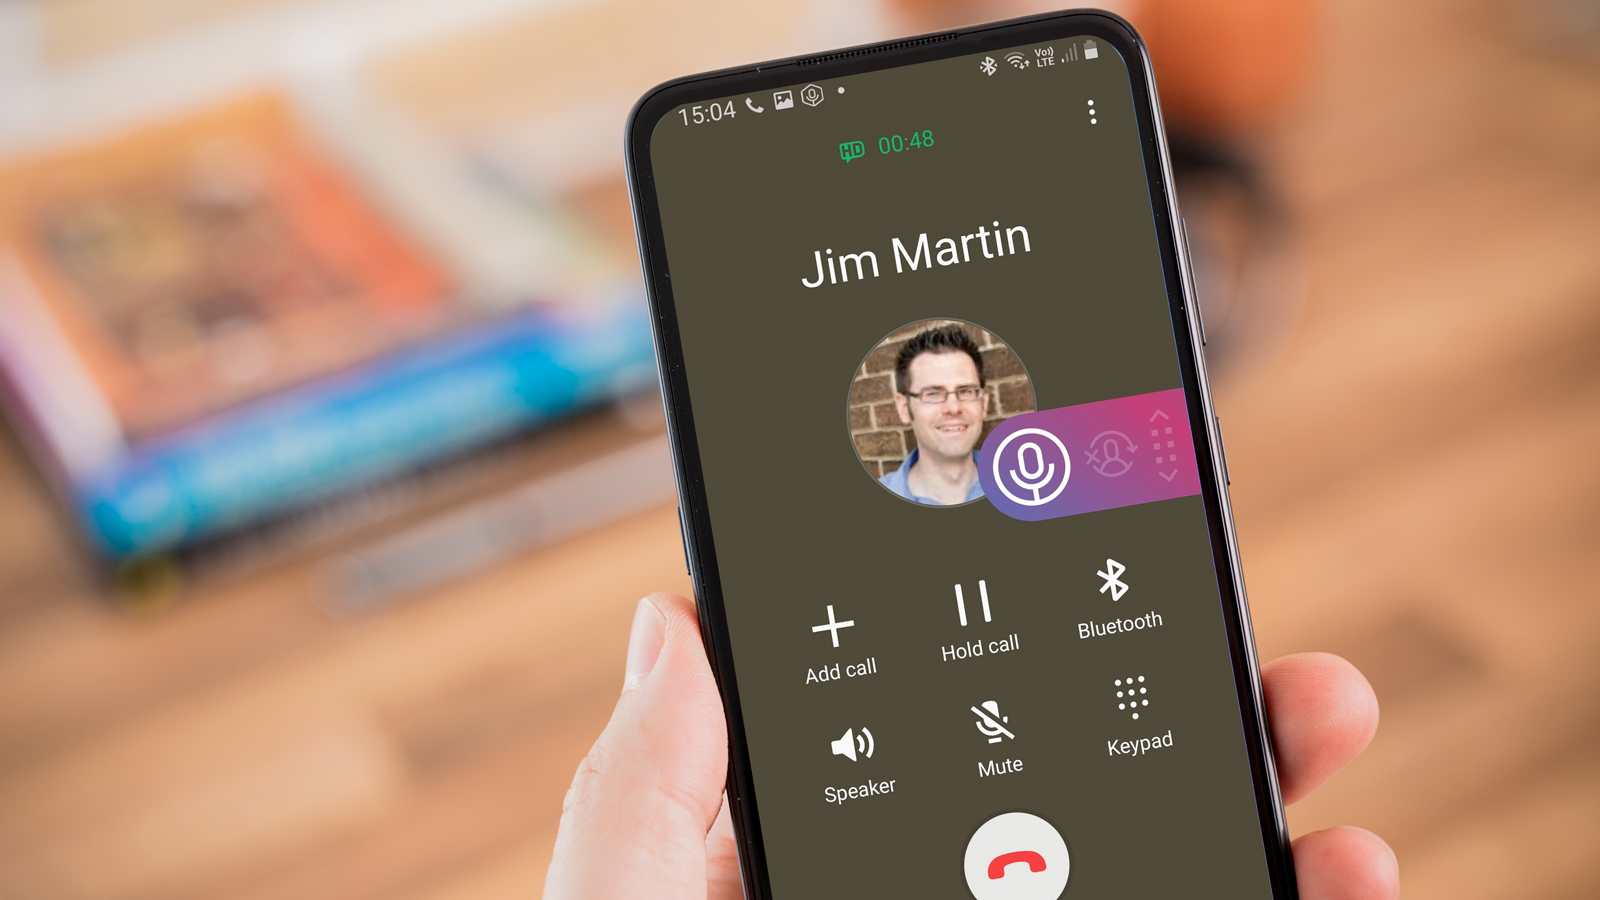 Cách ghi âm cuộc gọi trên iPhone nhanh MIỄN PHÍ trong 1 phút | Hướng dẫn kỹ  thuật